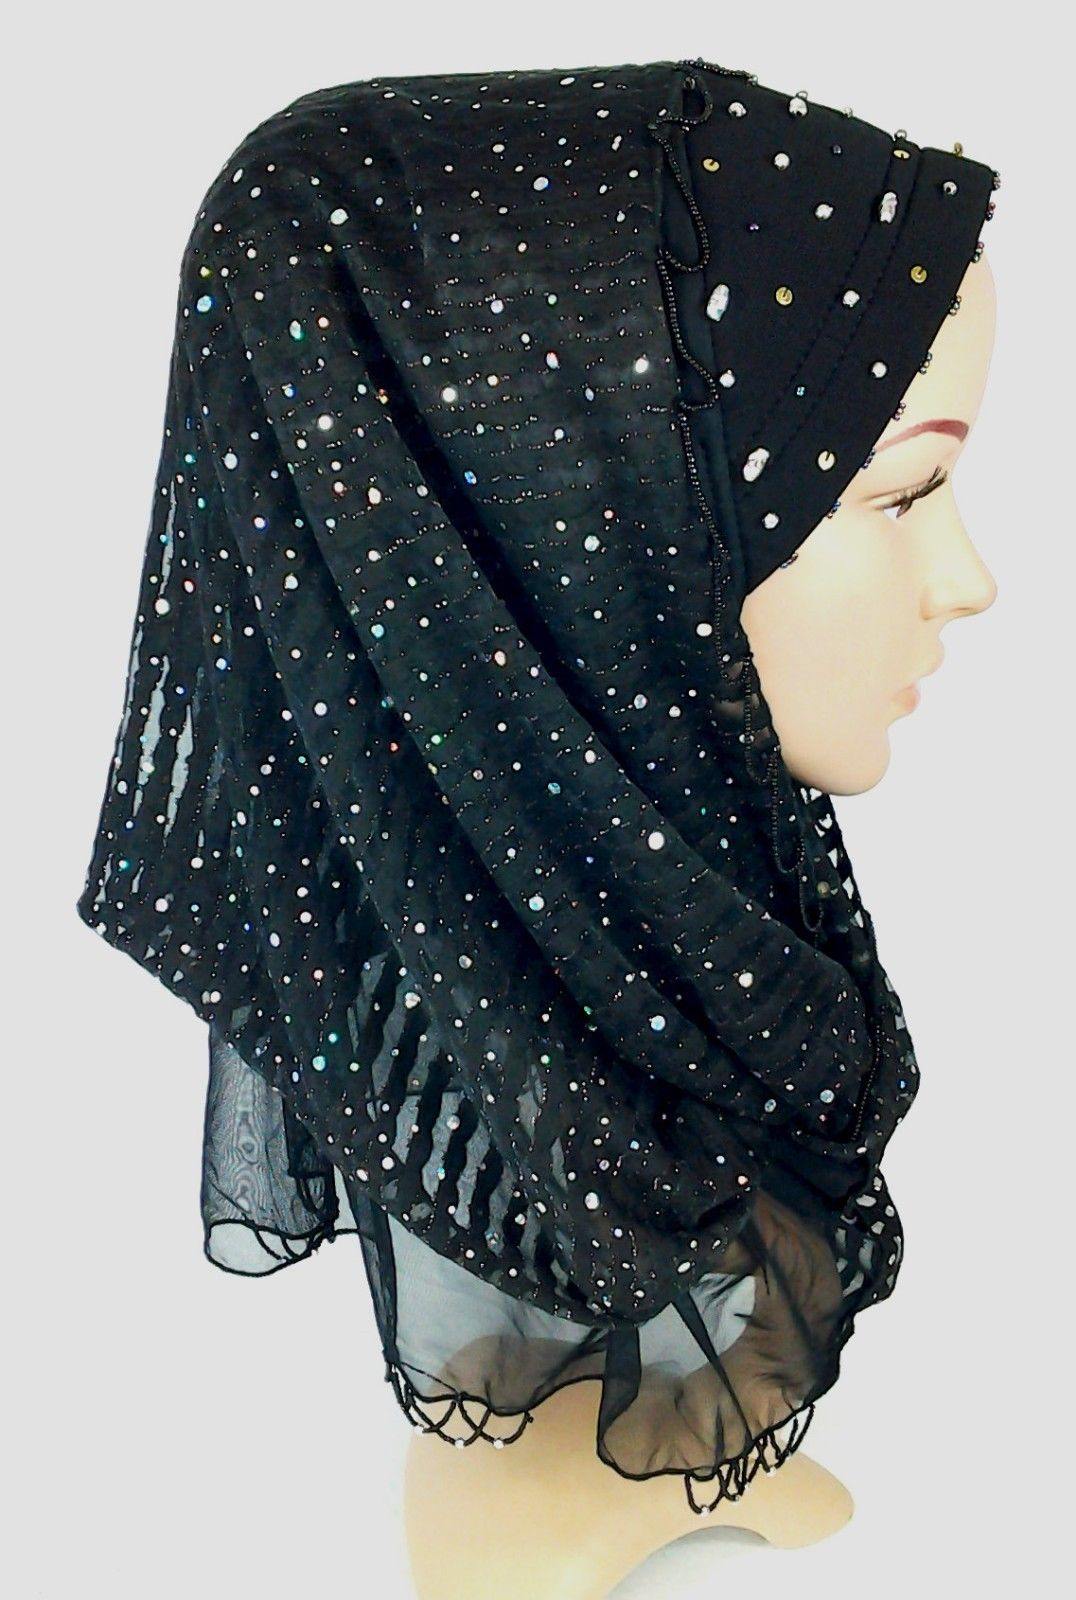 New Lace NET Yarn RhineStone Summer Hijab Islamic Cap Headwear Scarf Shawls - Arabian Shopping Zone